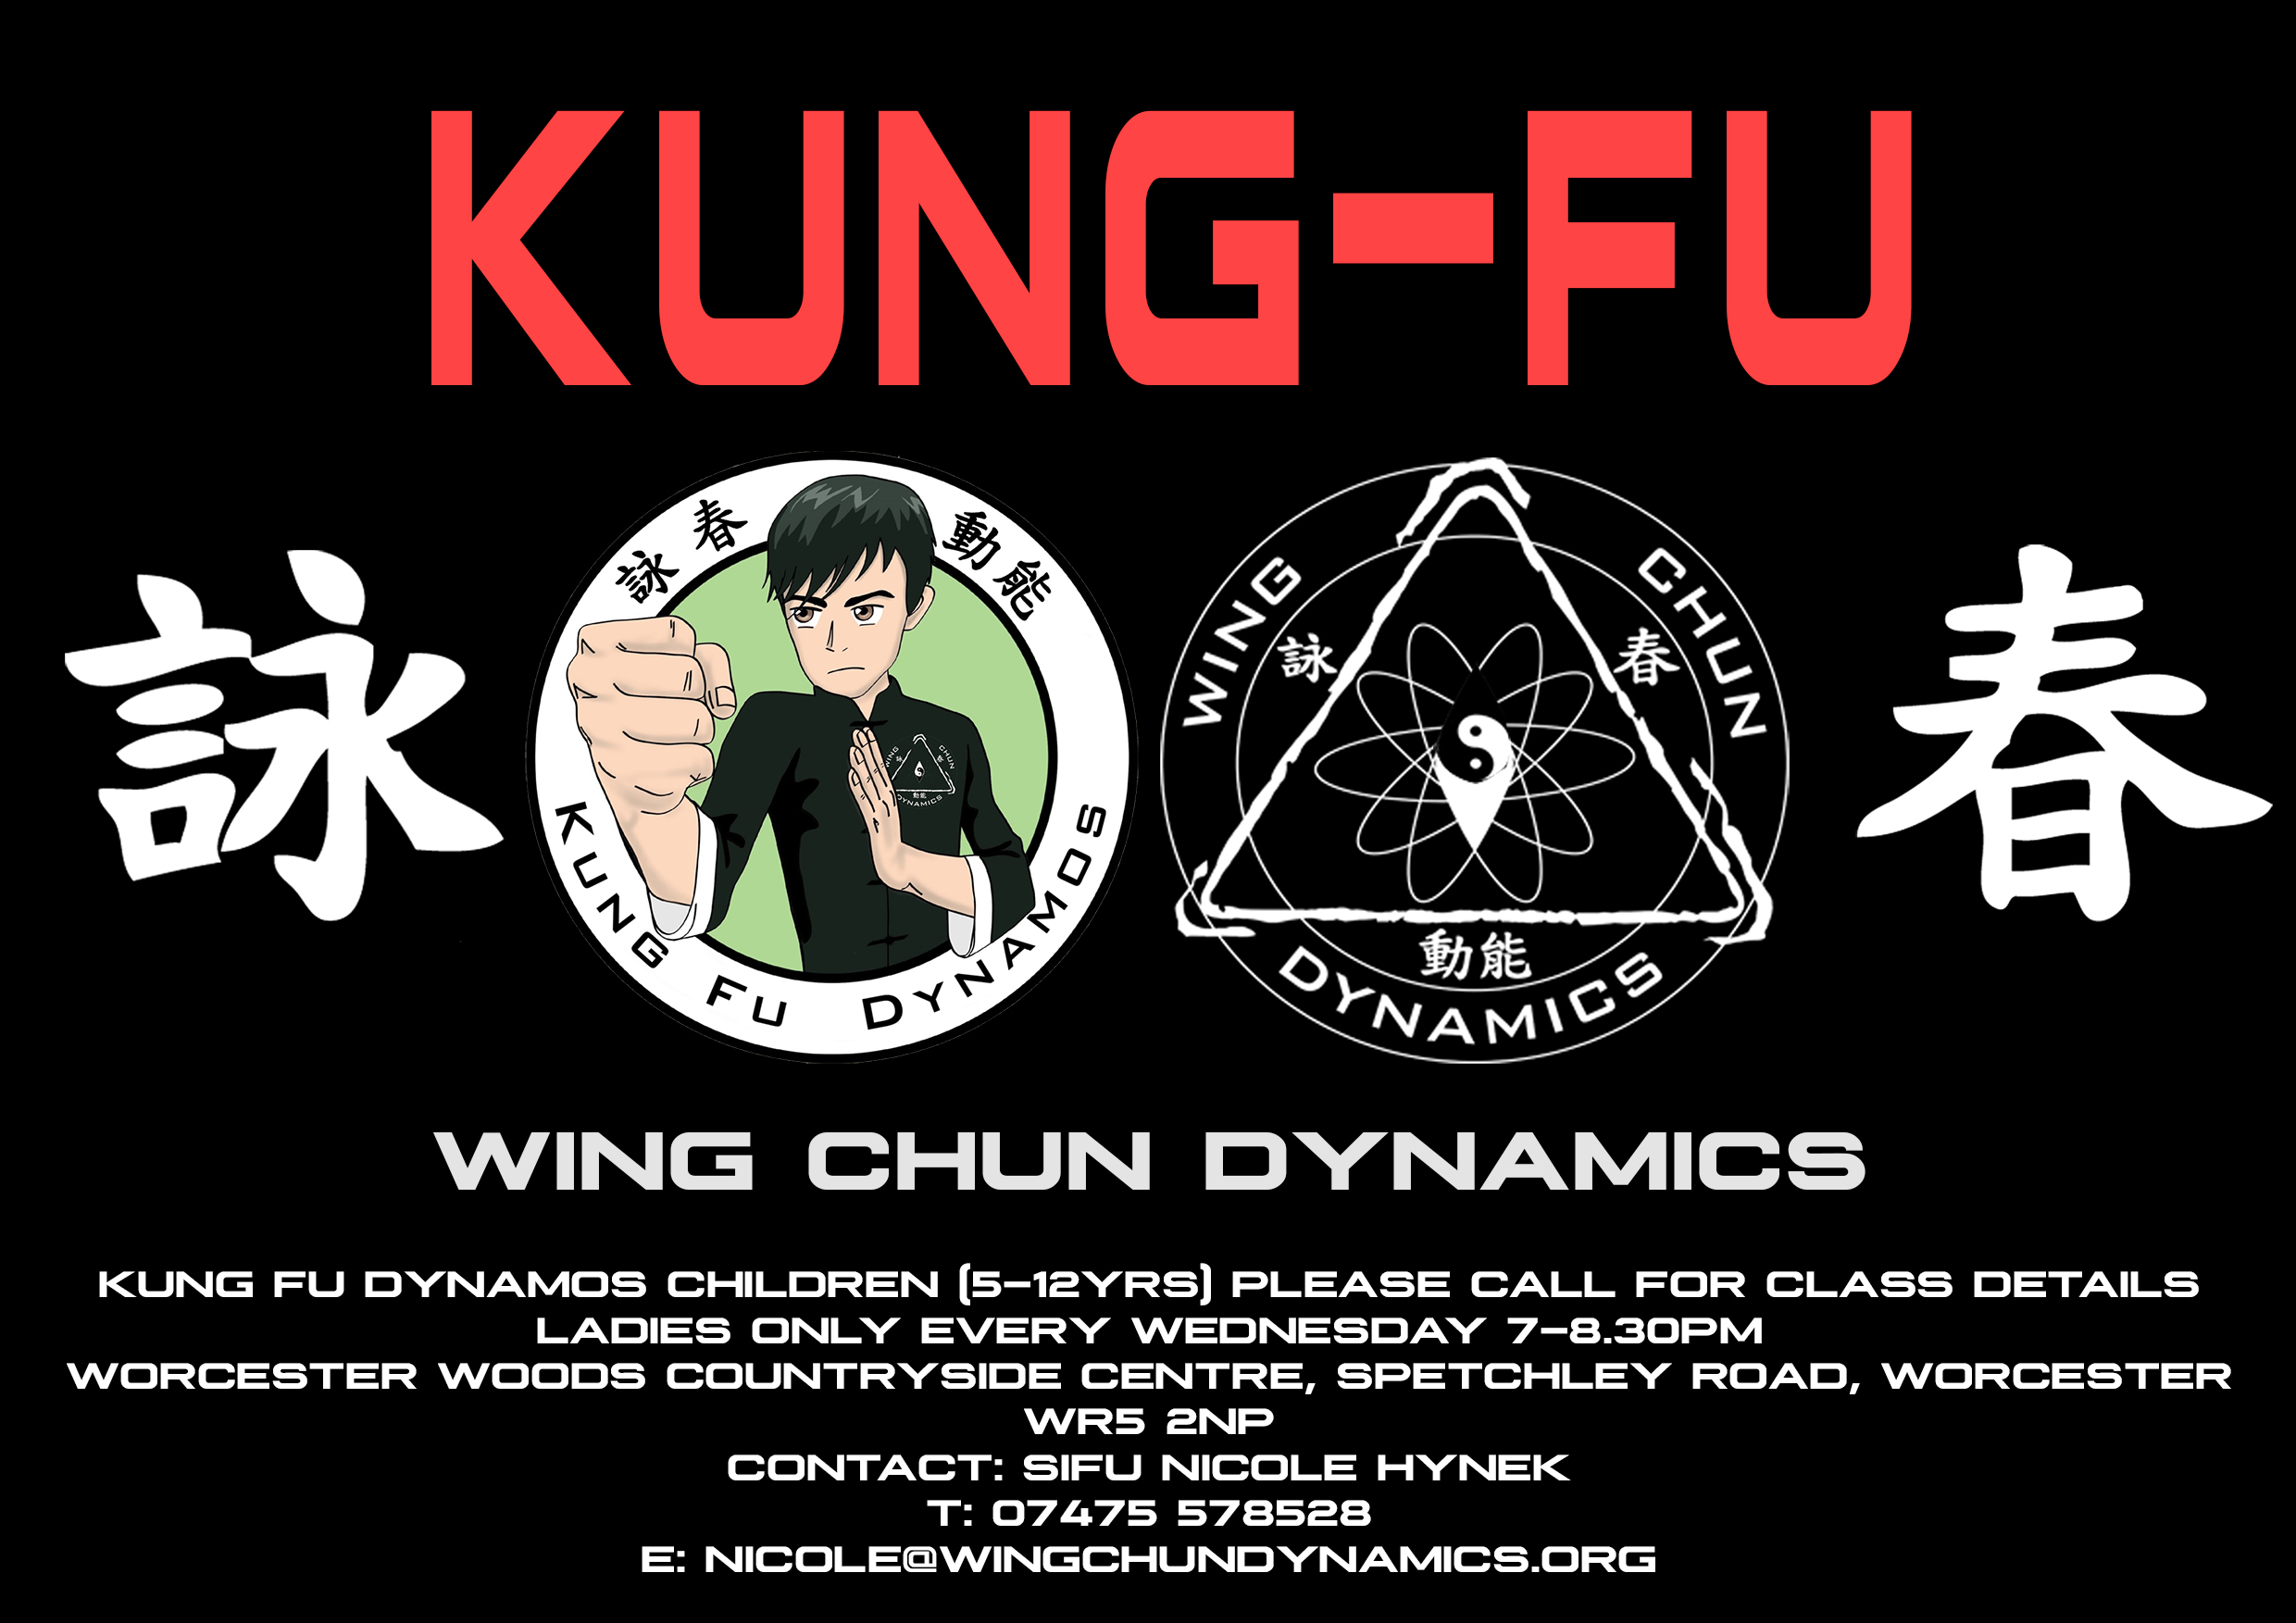 kung fu dynamos wing chun dynamics west midlands